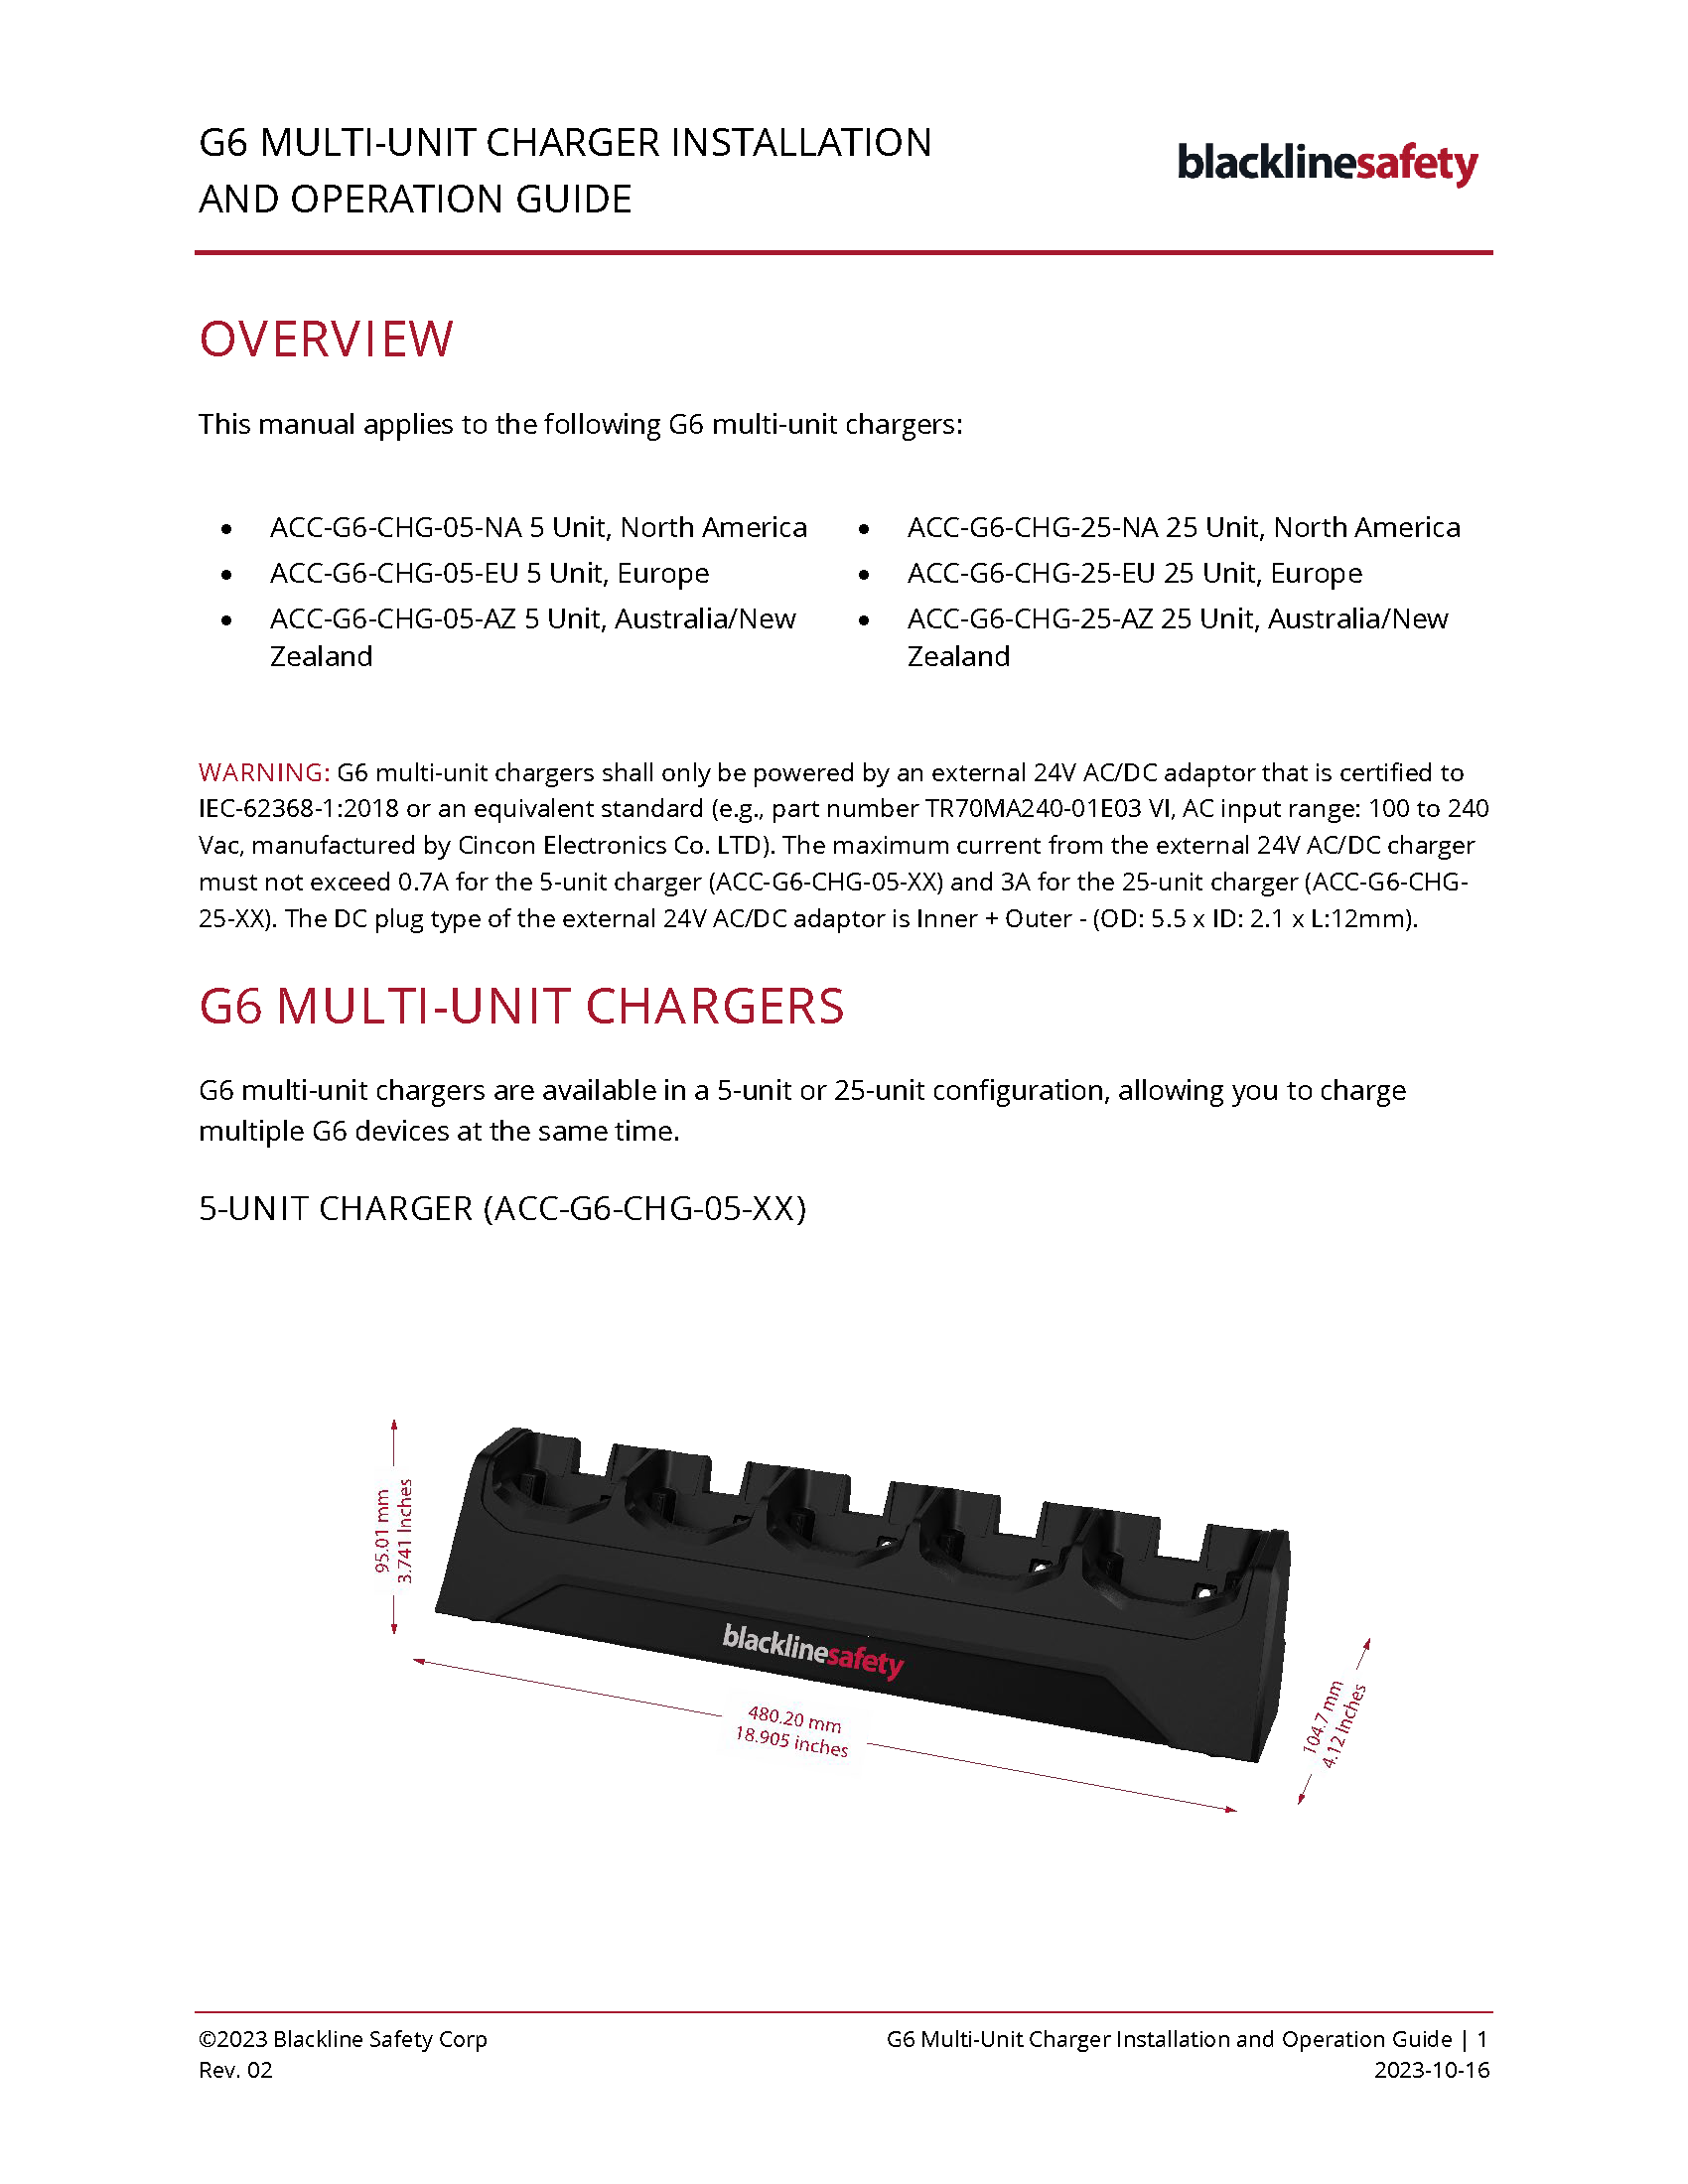 Guida all'installazione e al funzionamento del caricabatterie multiunità G6_Copertina